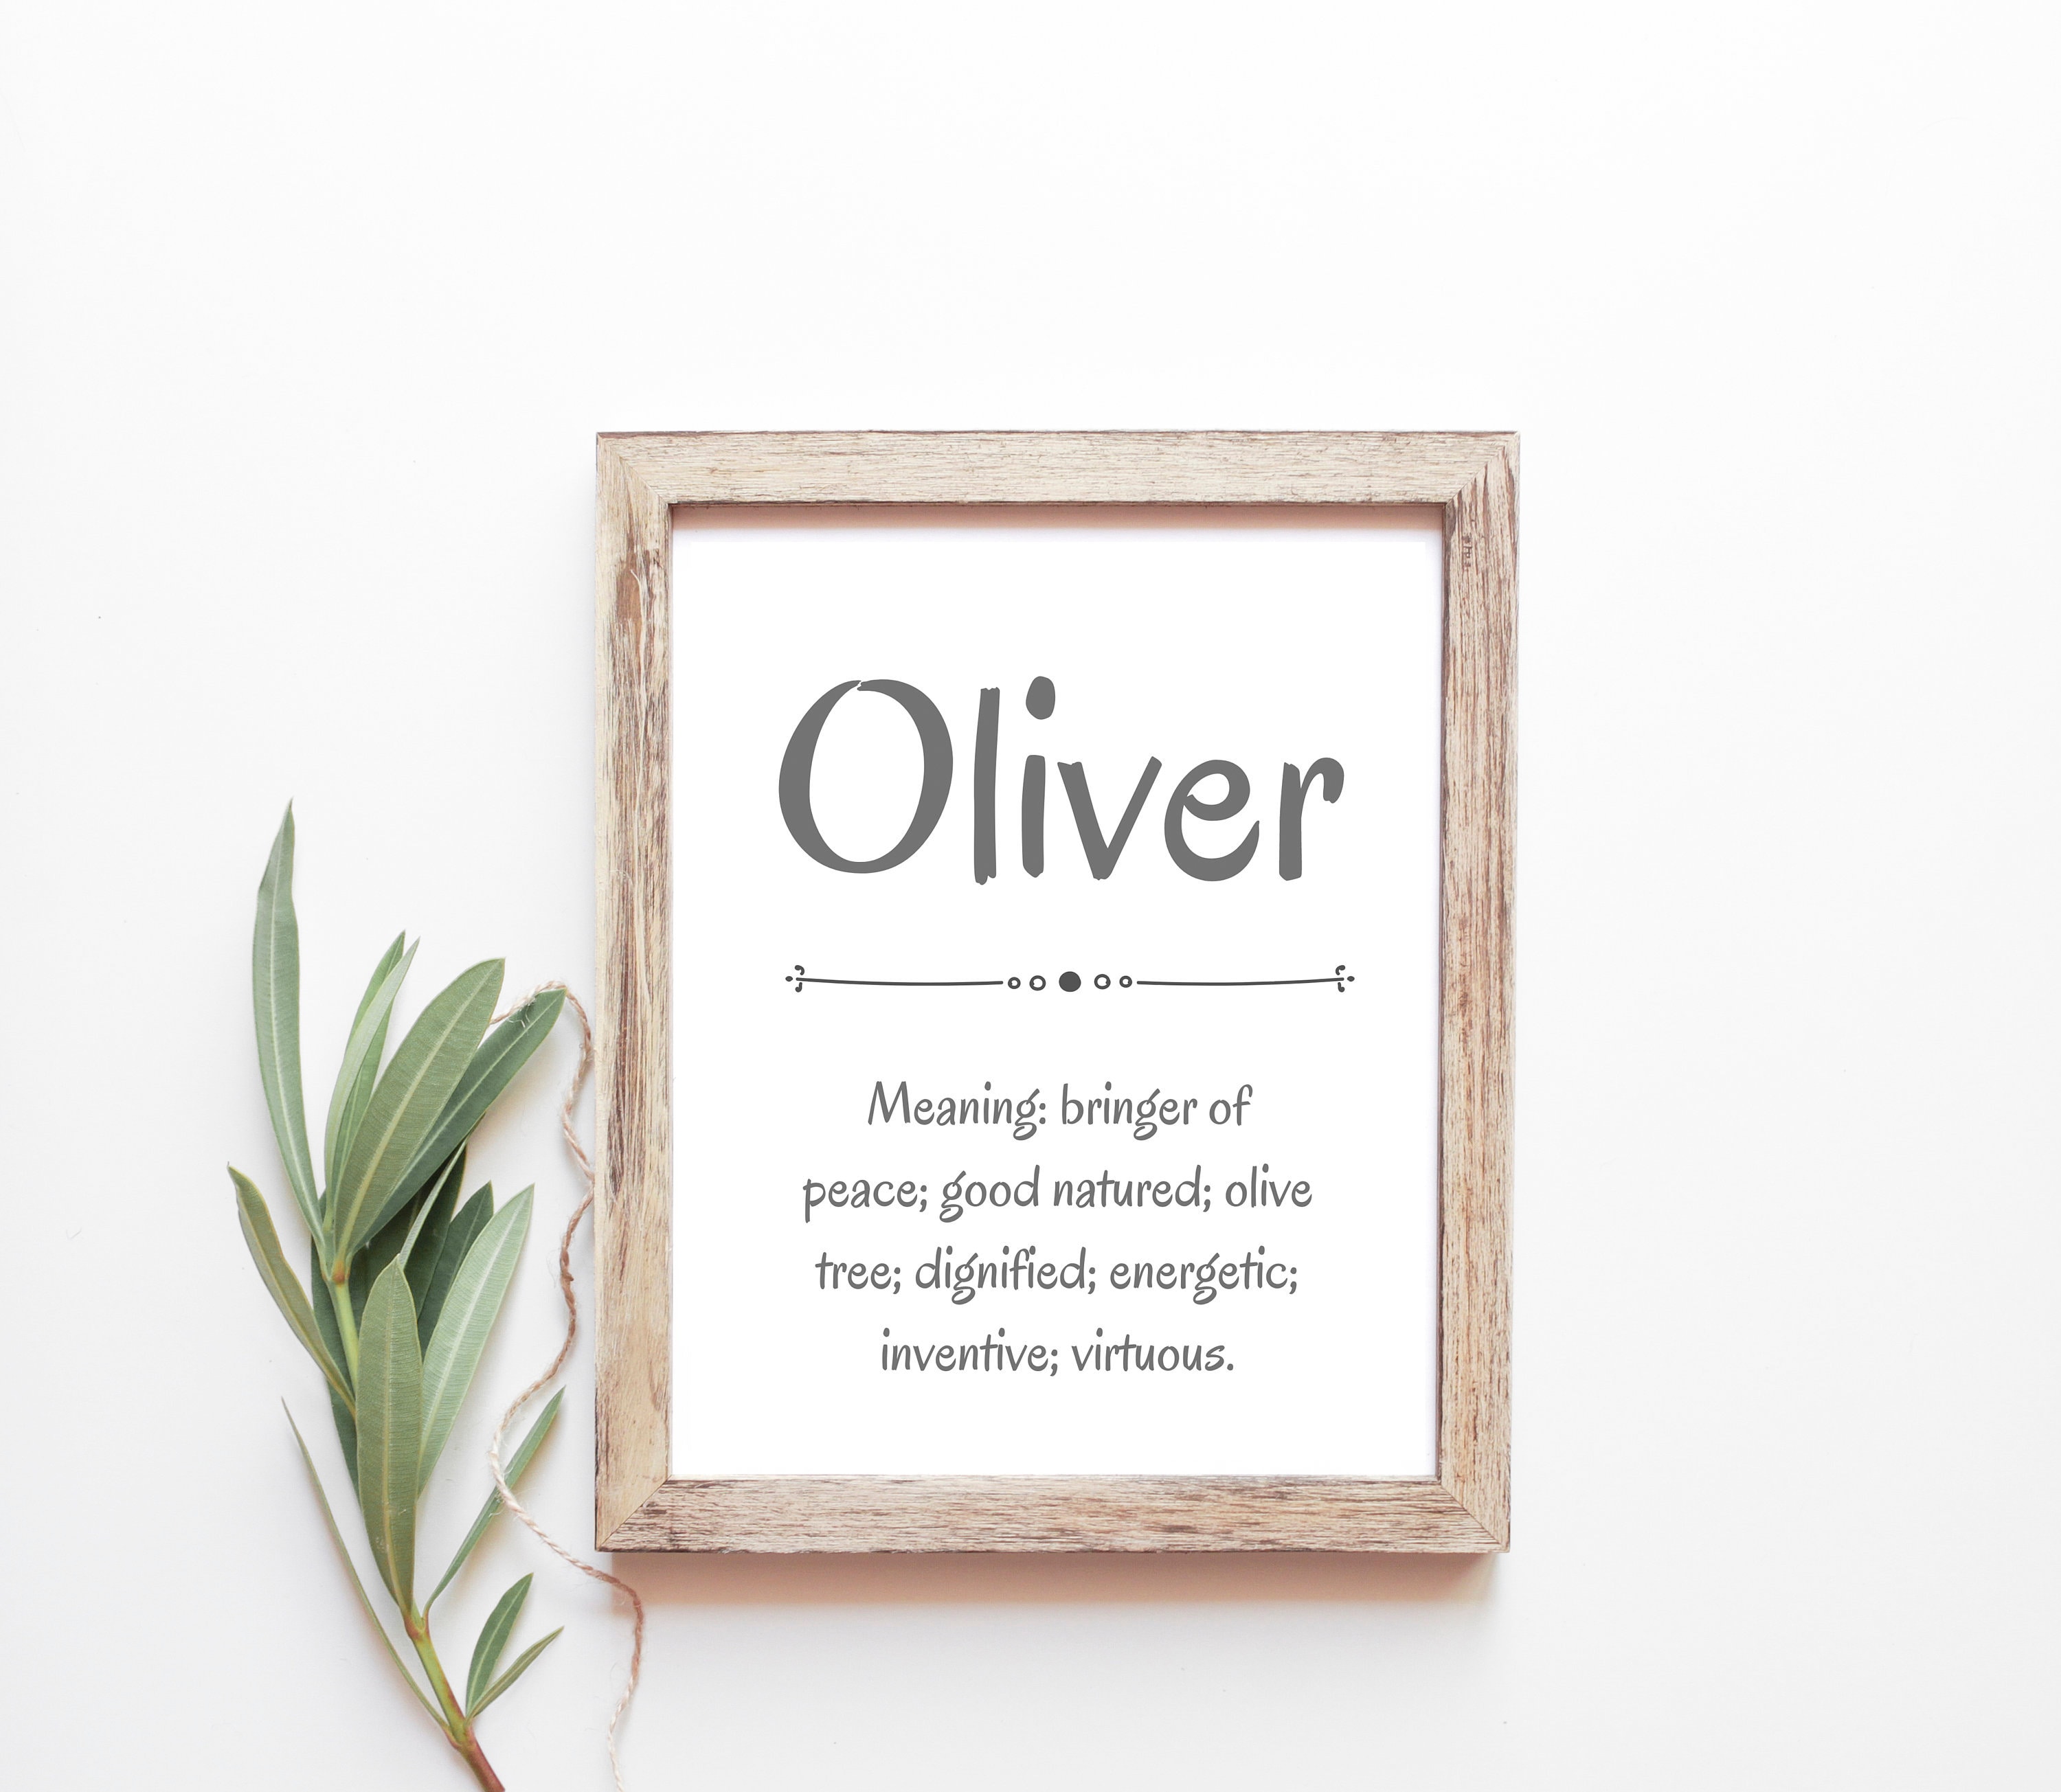 Significado do nome oliver